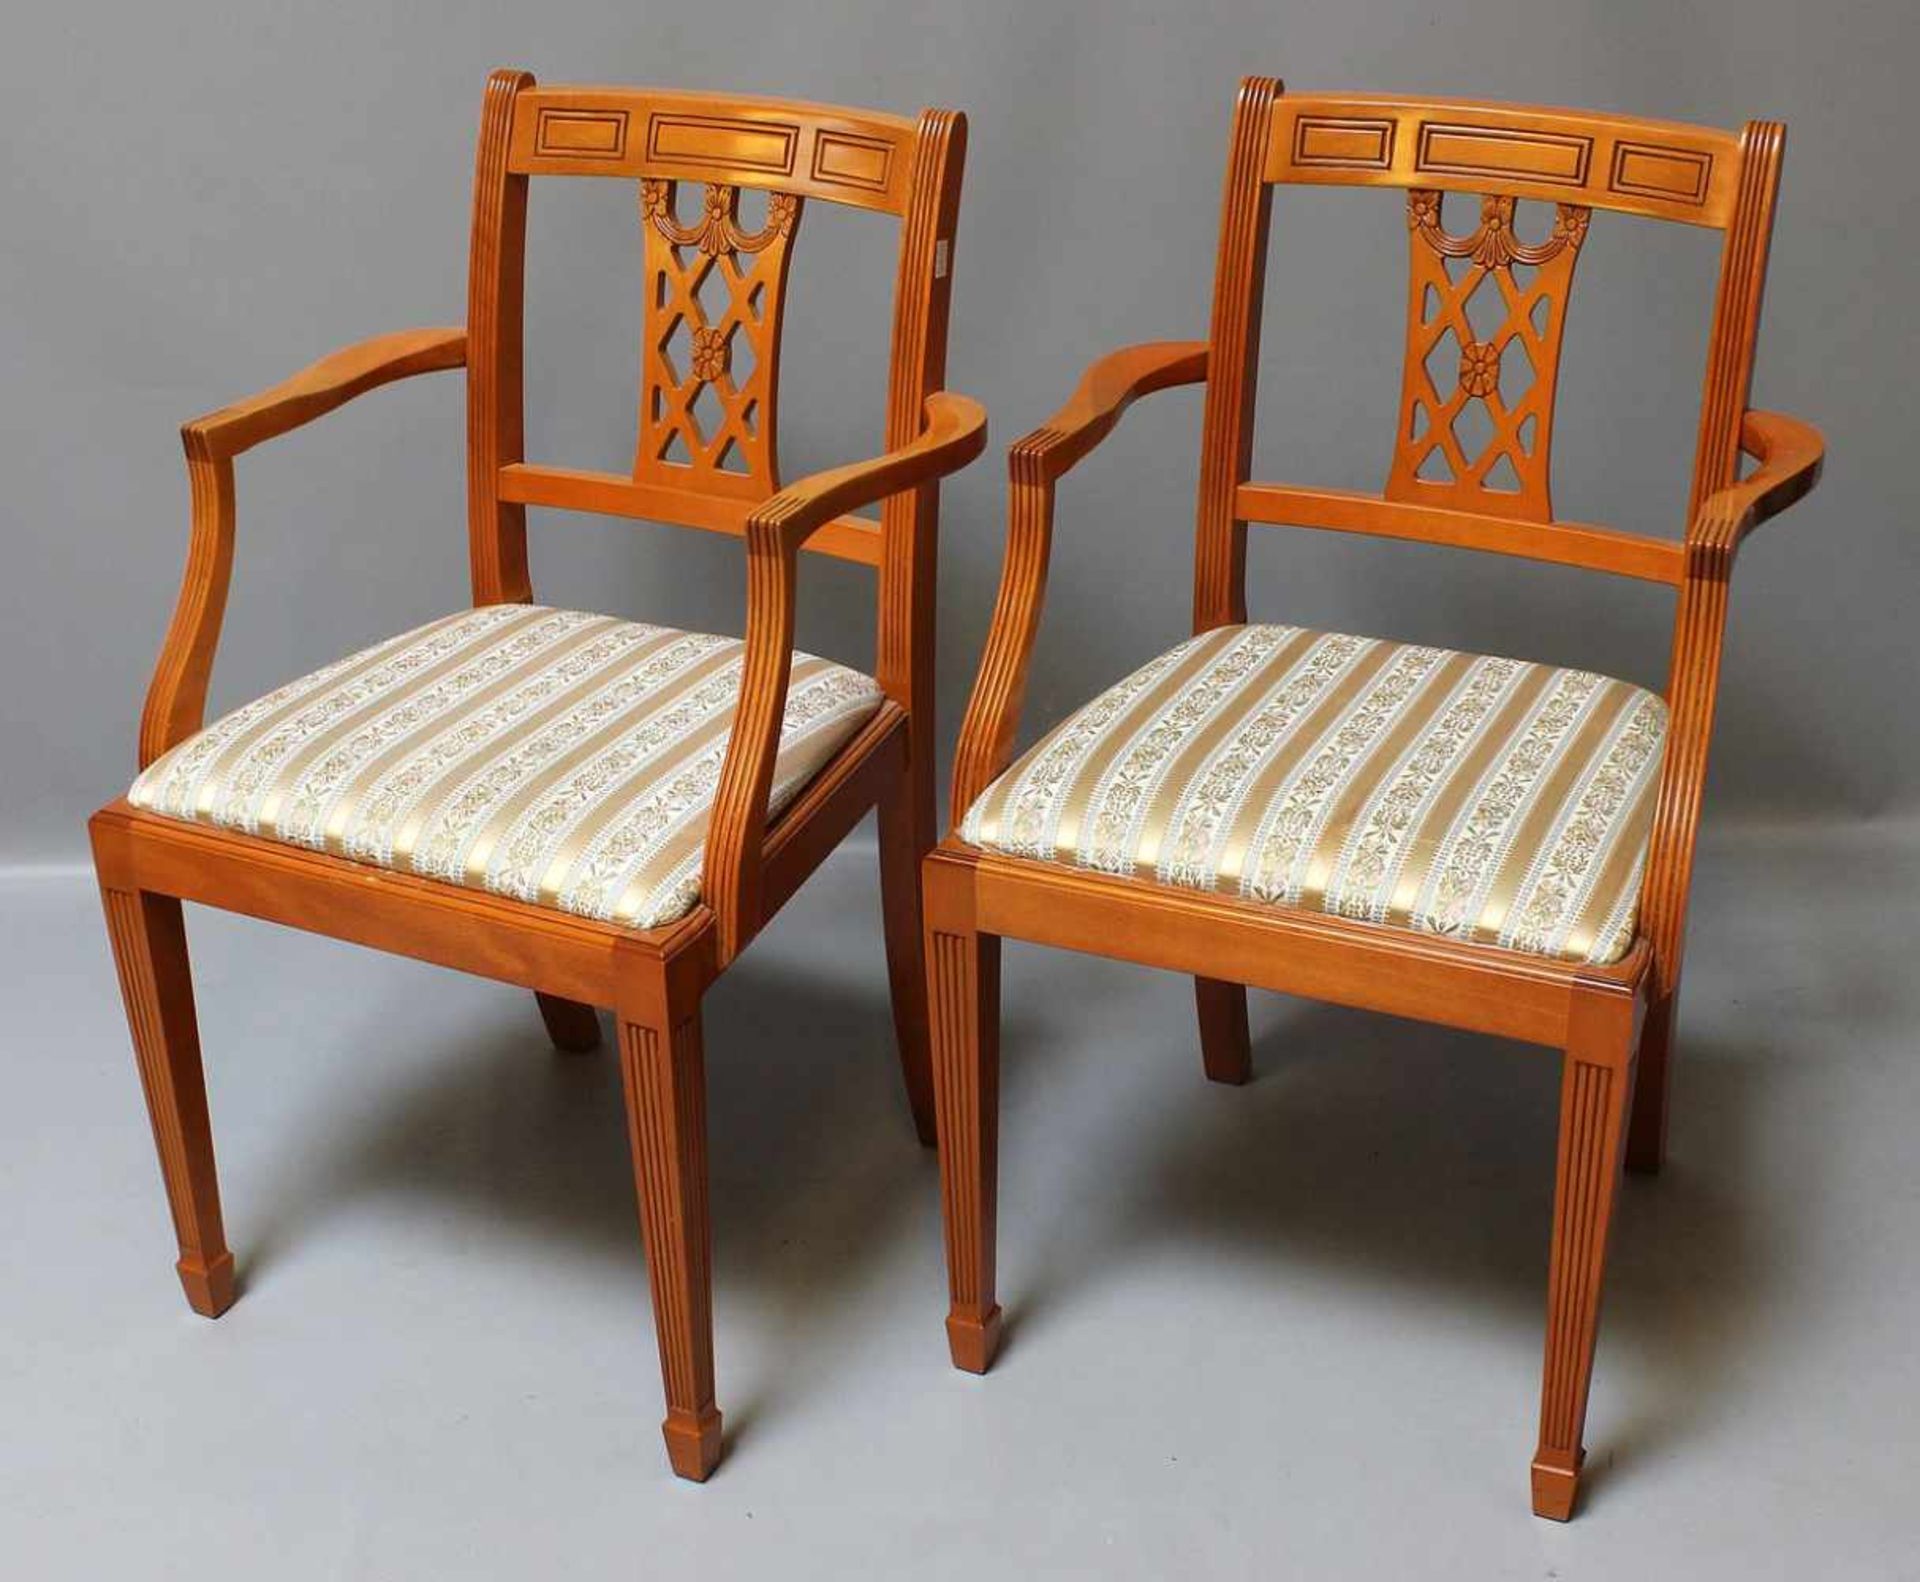 Esstisch mit 8 Stühlen.Eibe. Kannelierte, konische Beine, Sitzflächen der Stühle (2x mit - Bild 3 aus 3